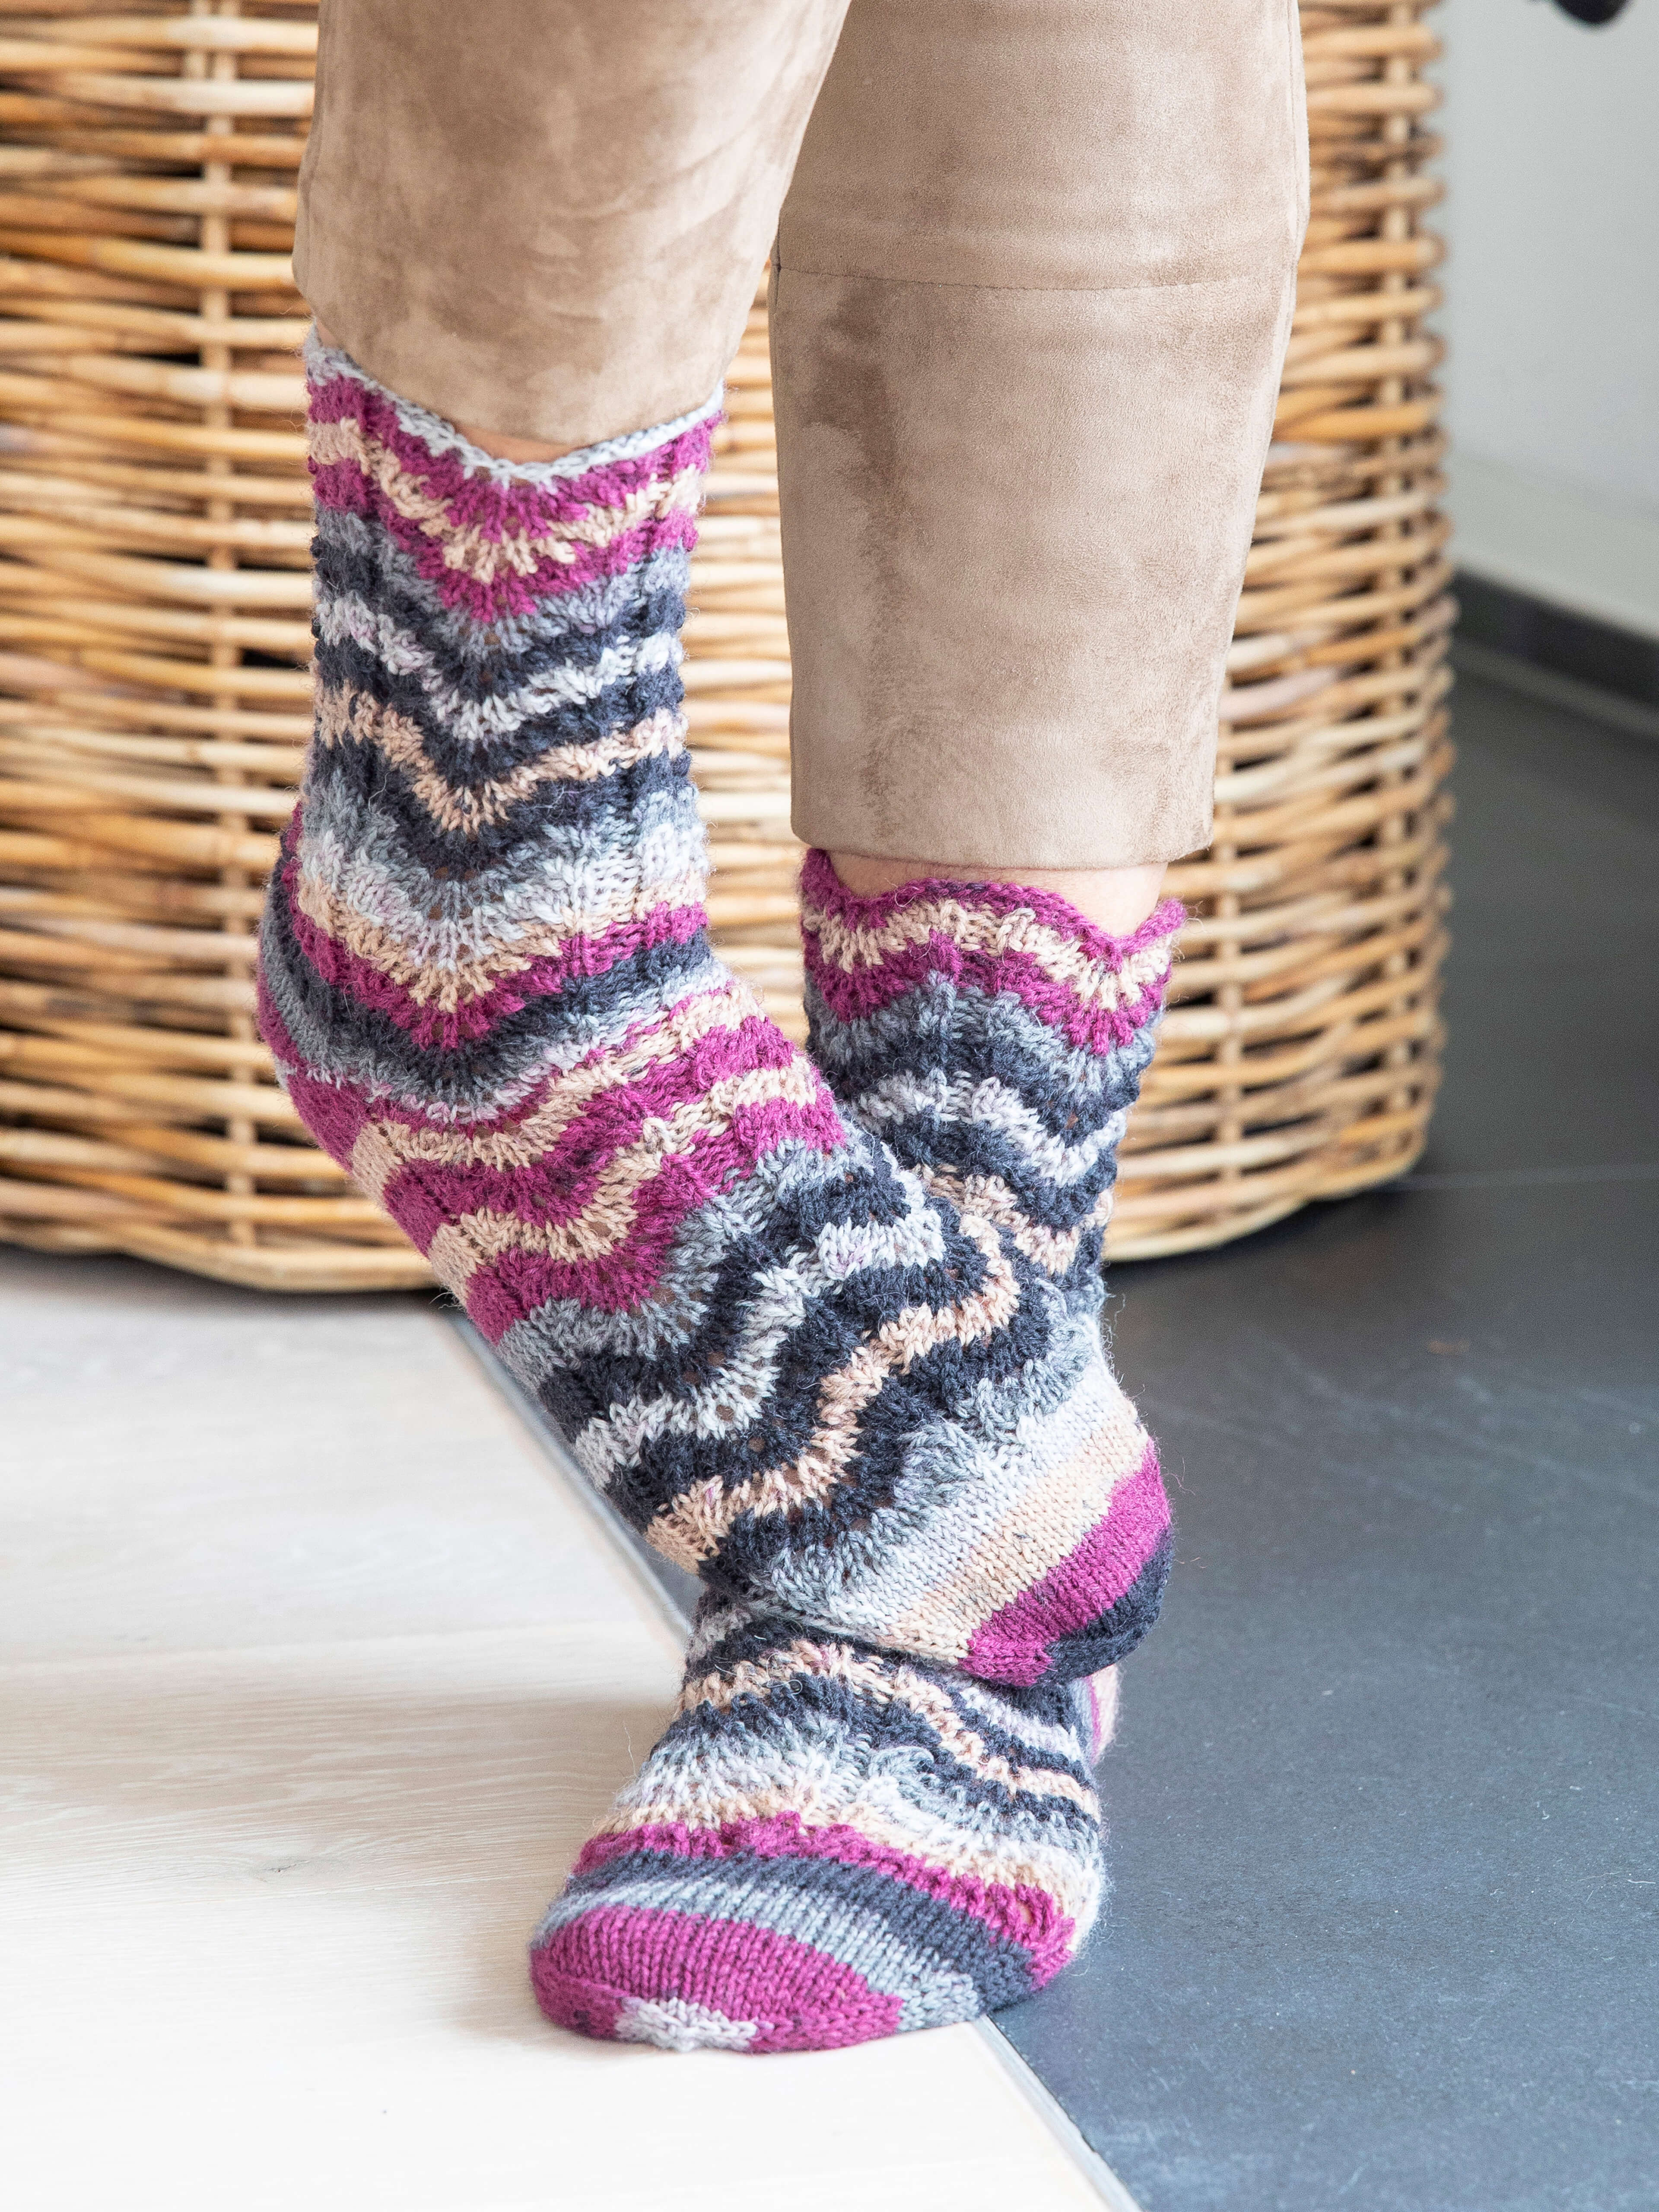 Gestrickte Socken aus Hot Socks color Wolle von Gründl